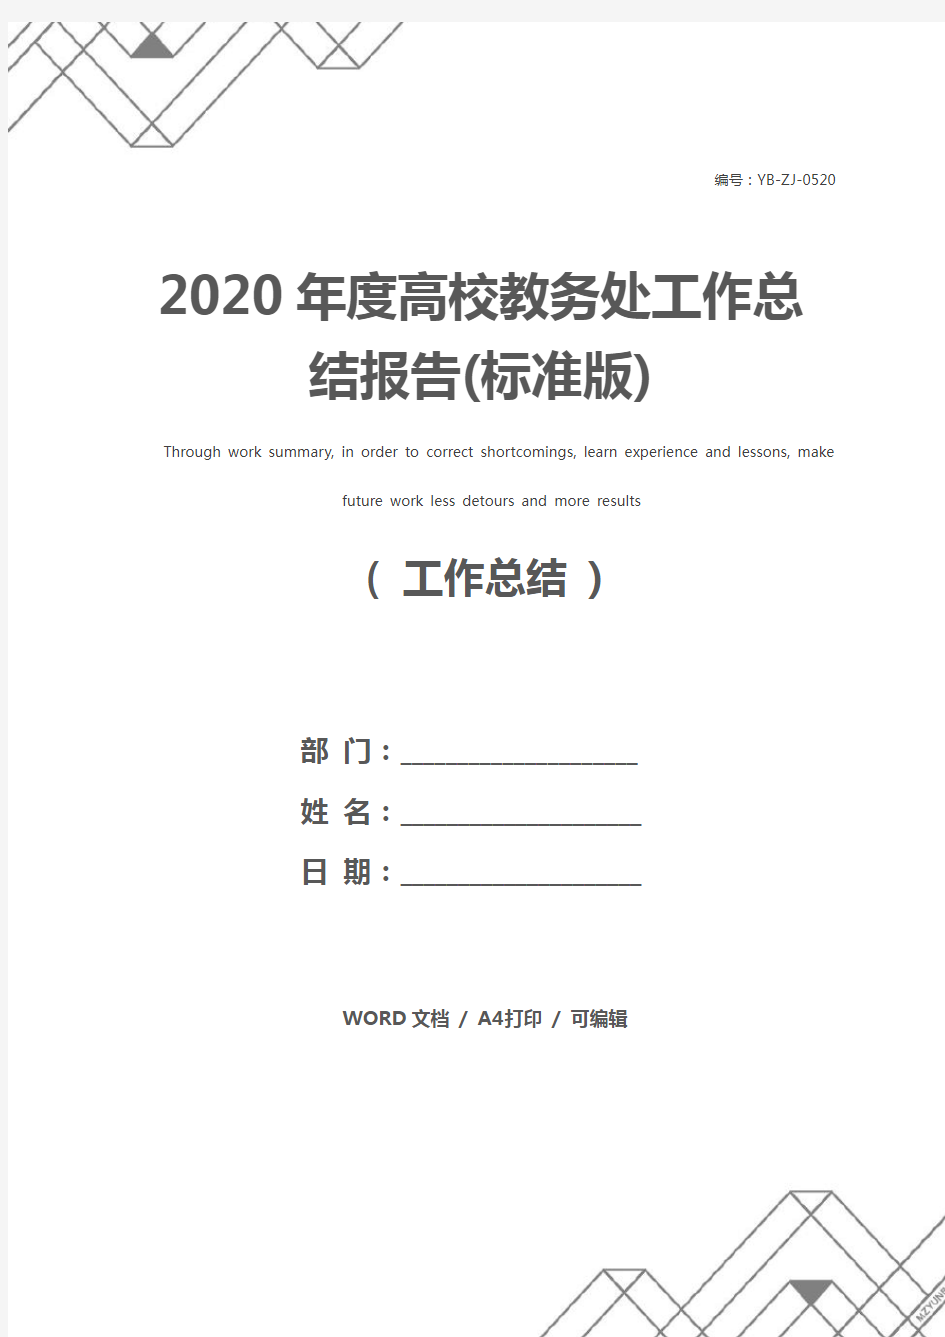 2020年度高校教务处工作总结报告(标准版)